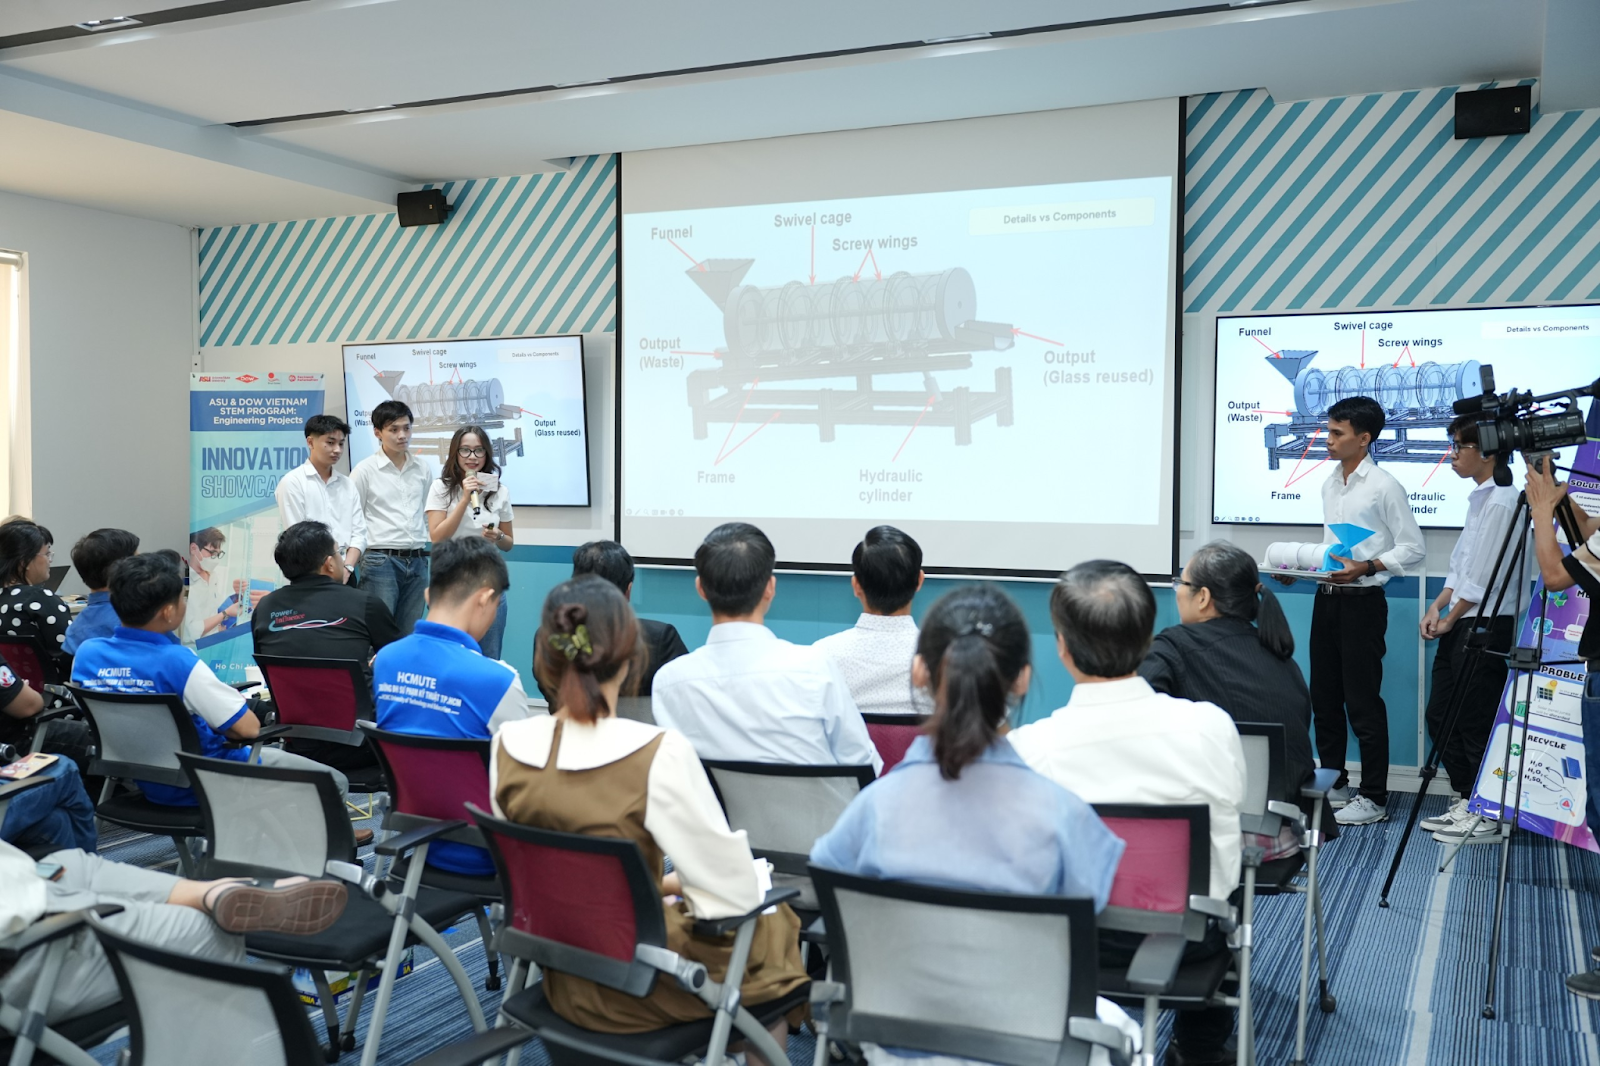 Sinh viên Lạc Hồng đạt Giải trình bày ấn tượng nhất tại Triển lãm dự án đổi mới eProjec